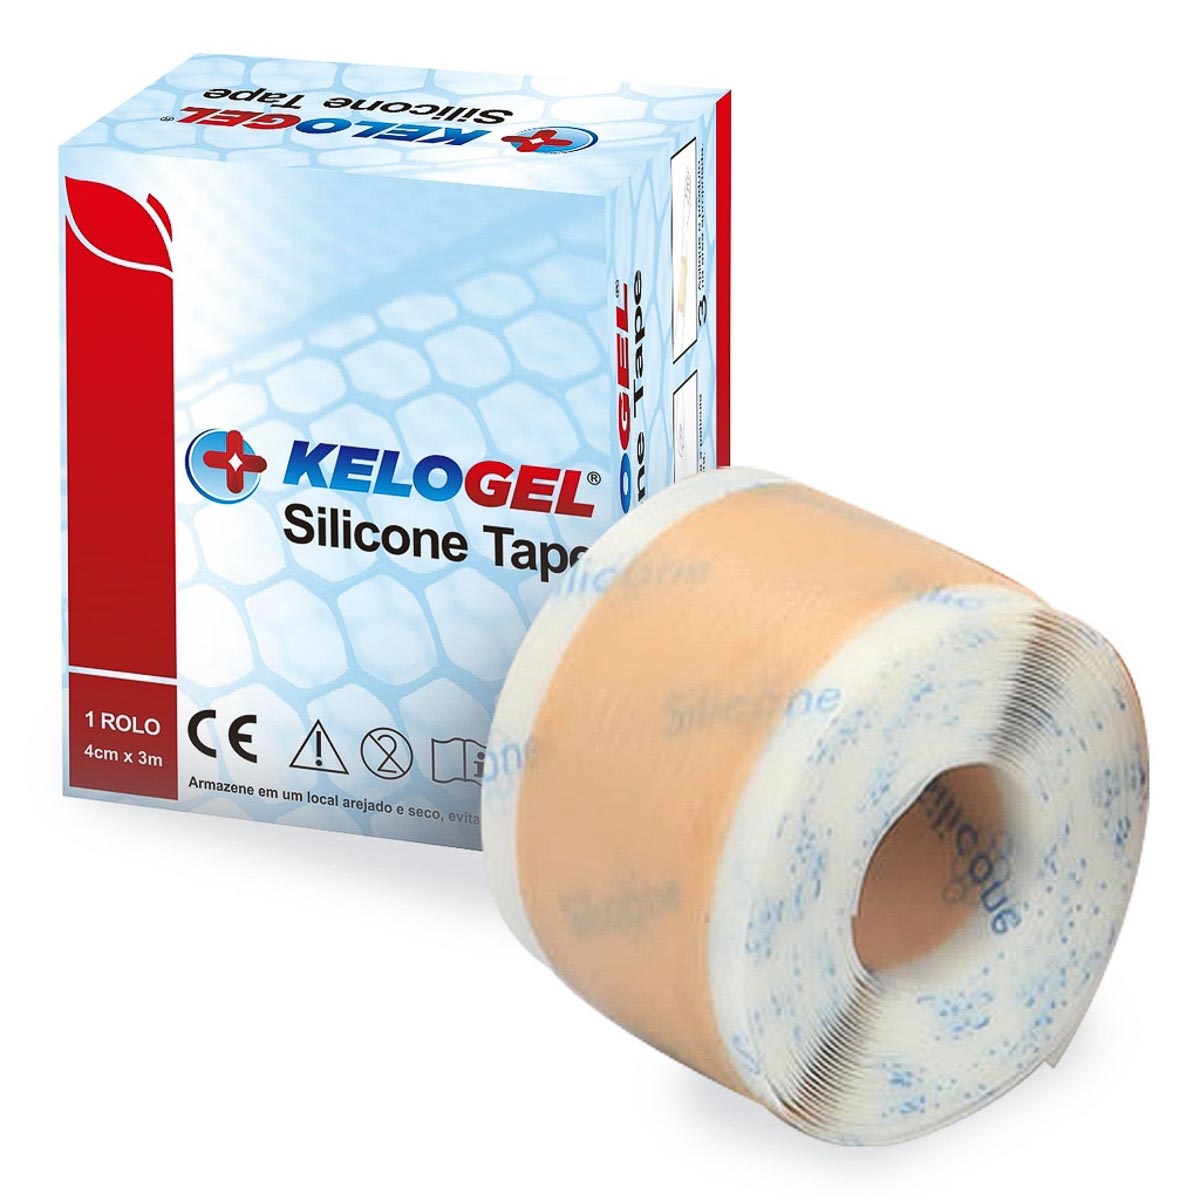 Rolo de fita de silicone tape Kelogel médico hospitalar 300x4cm fixação de sondas, tratamento cicatriz não hipertróficas  - Cinta se Nova